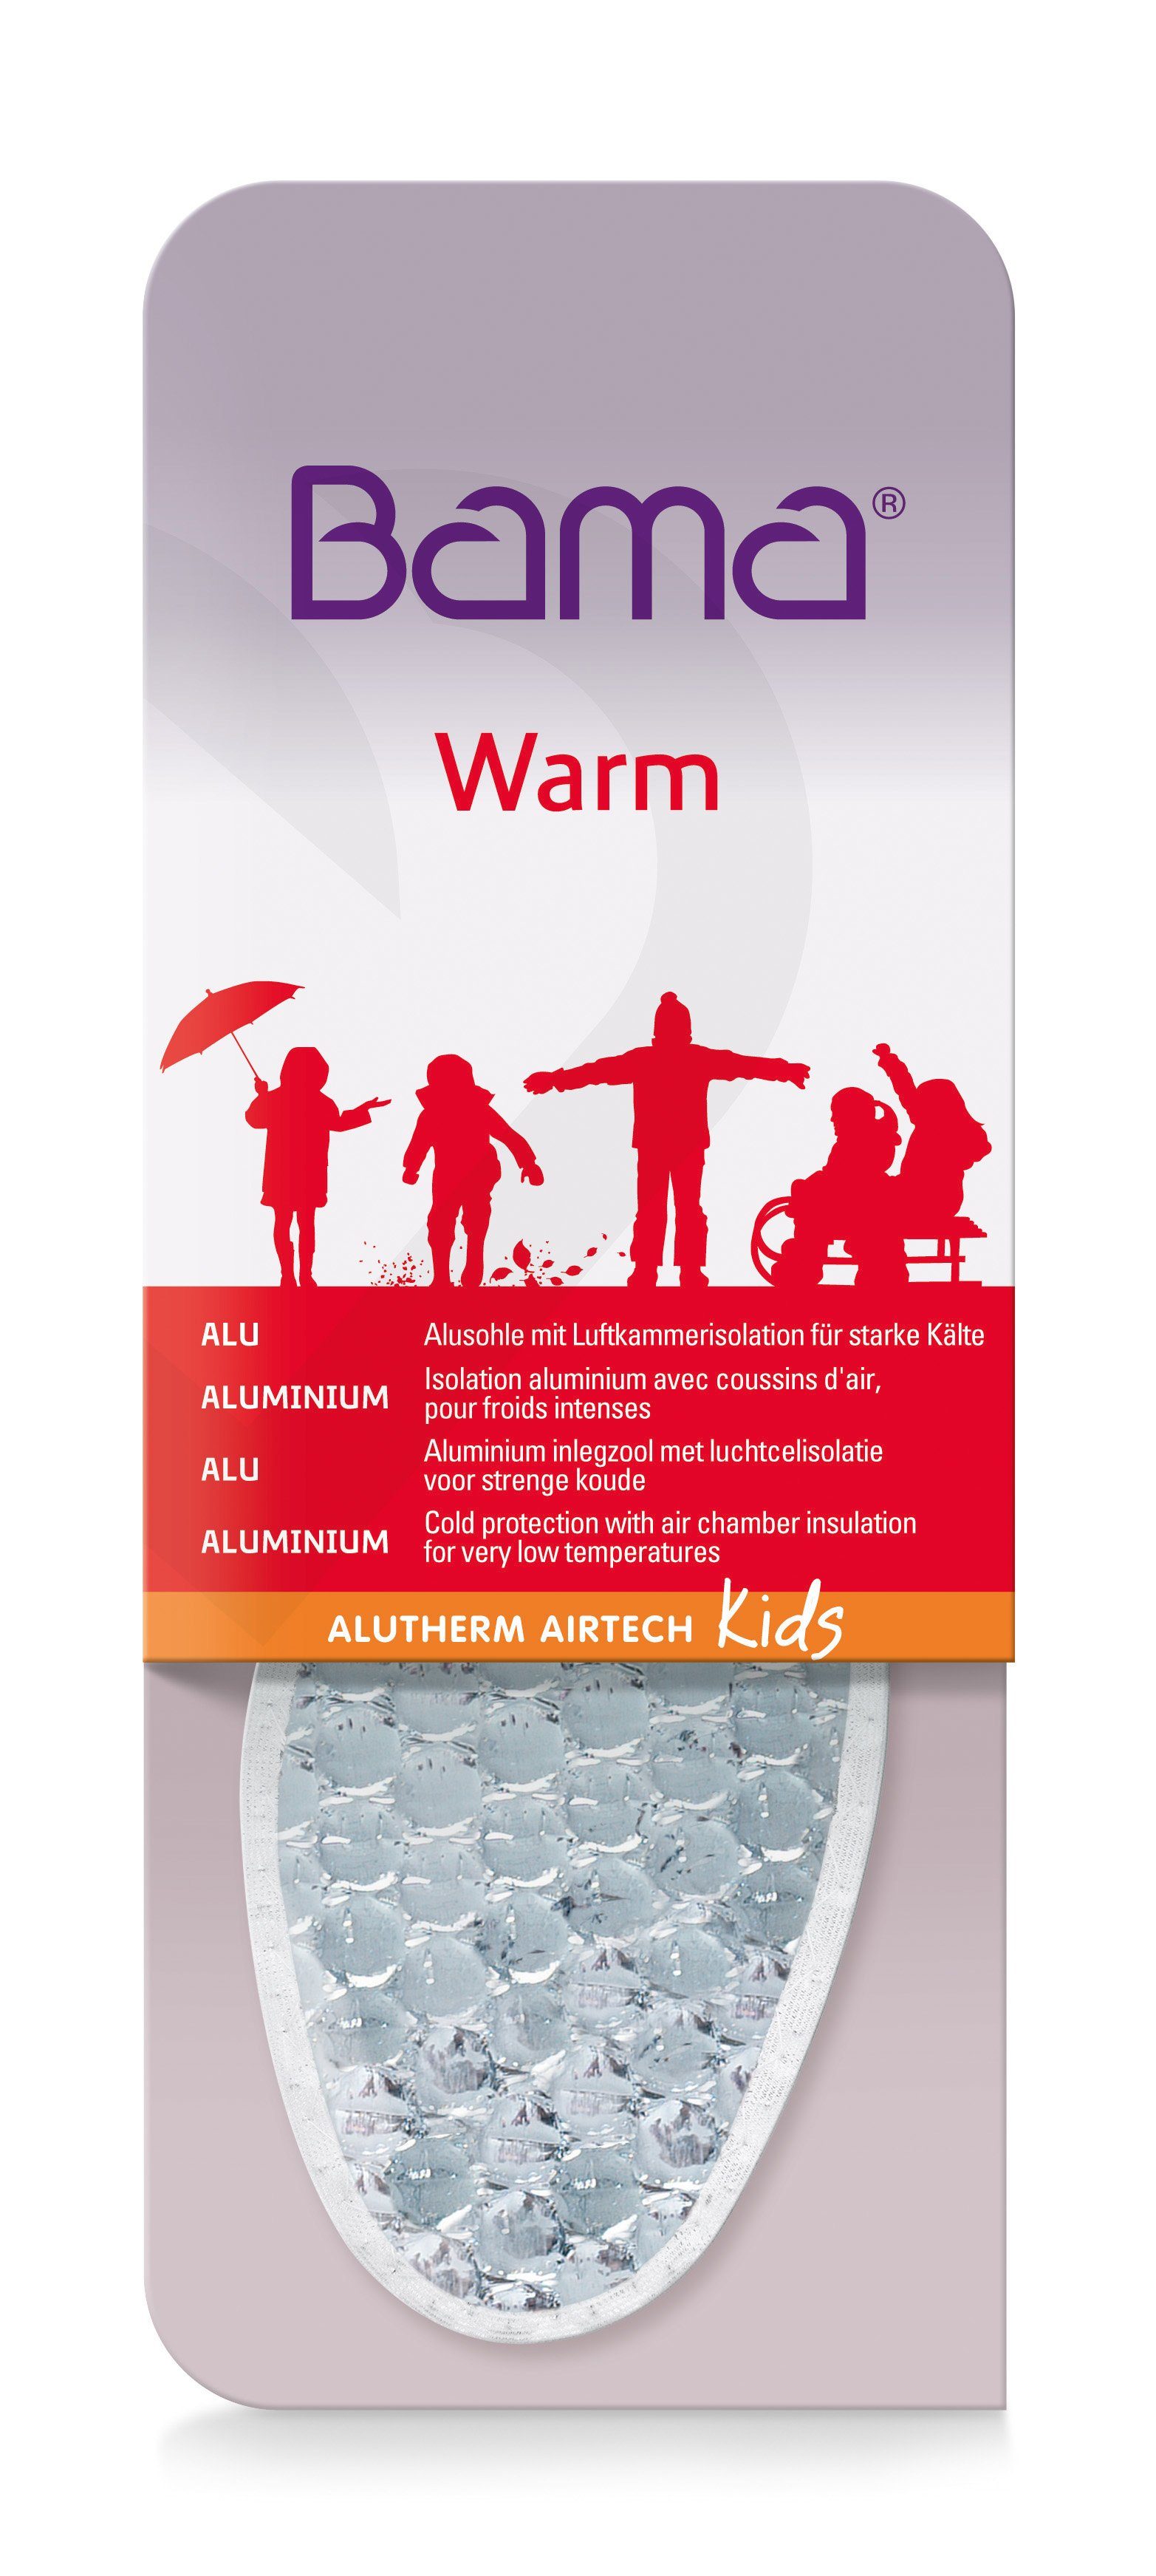 Kälte Luftkammerisolation Alutherm Thermosohlen BAMA Group starke Kids Airtech mit - für